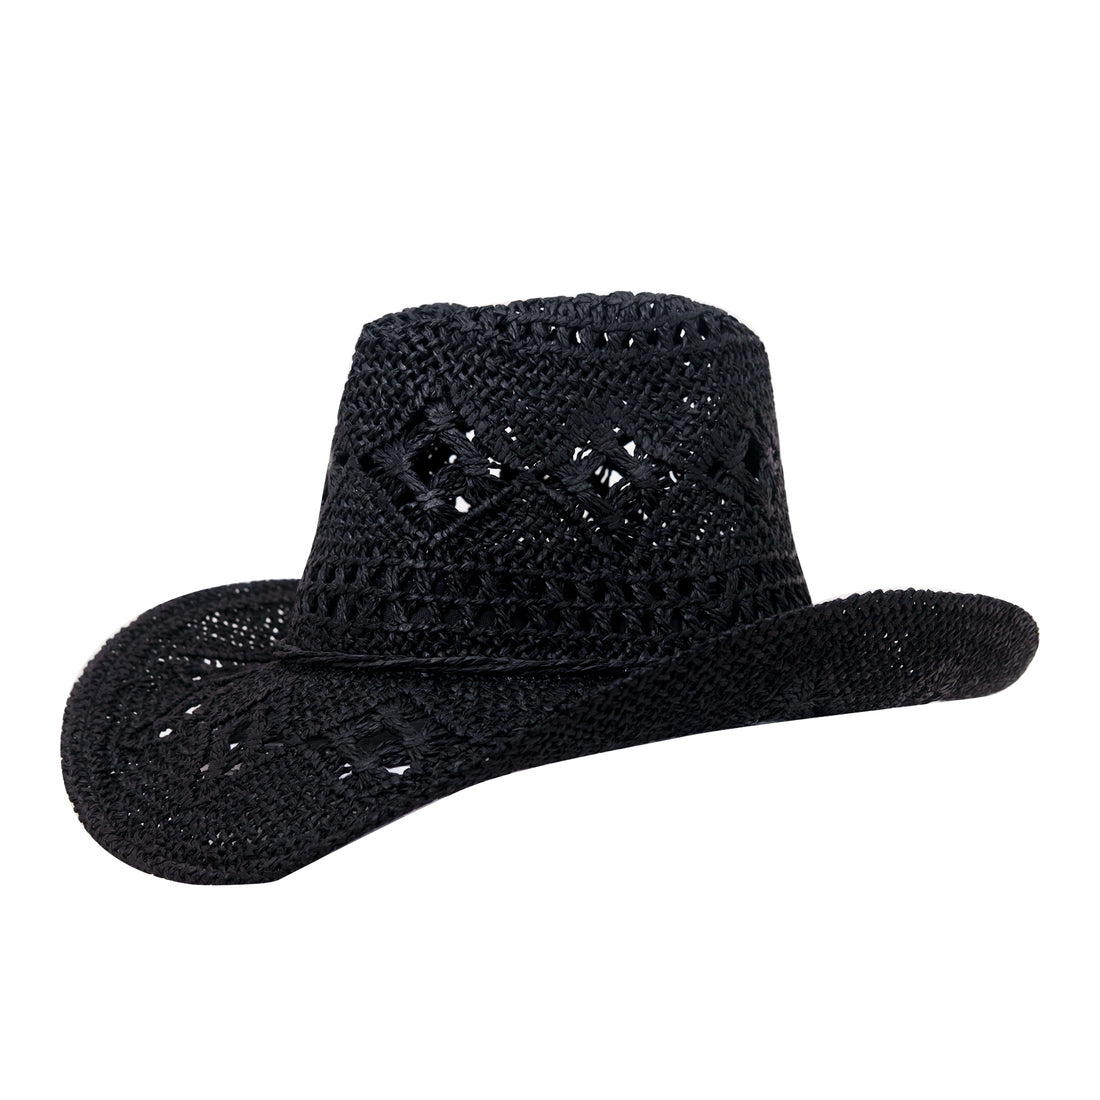 Heidi Black - Ranch hat